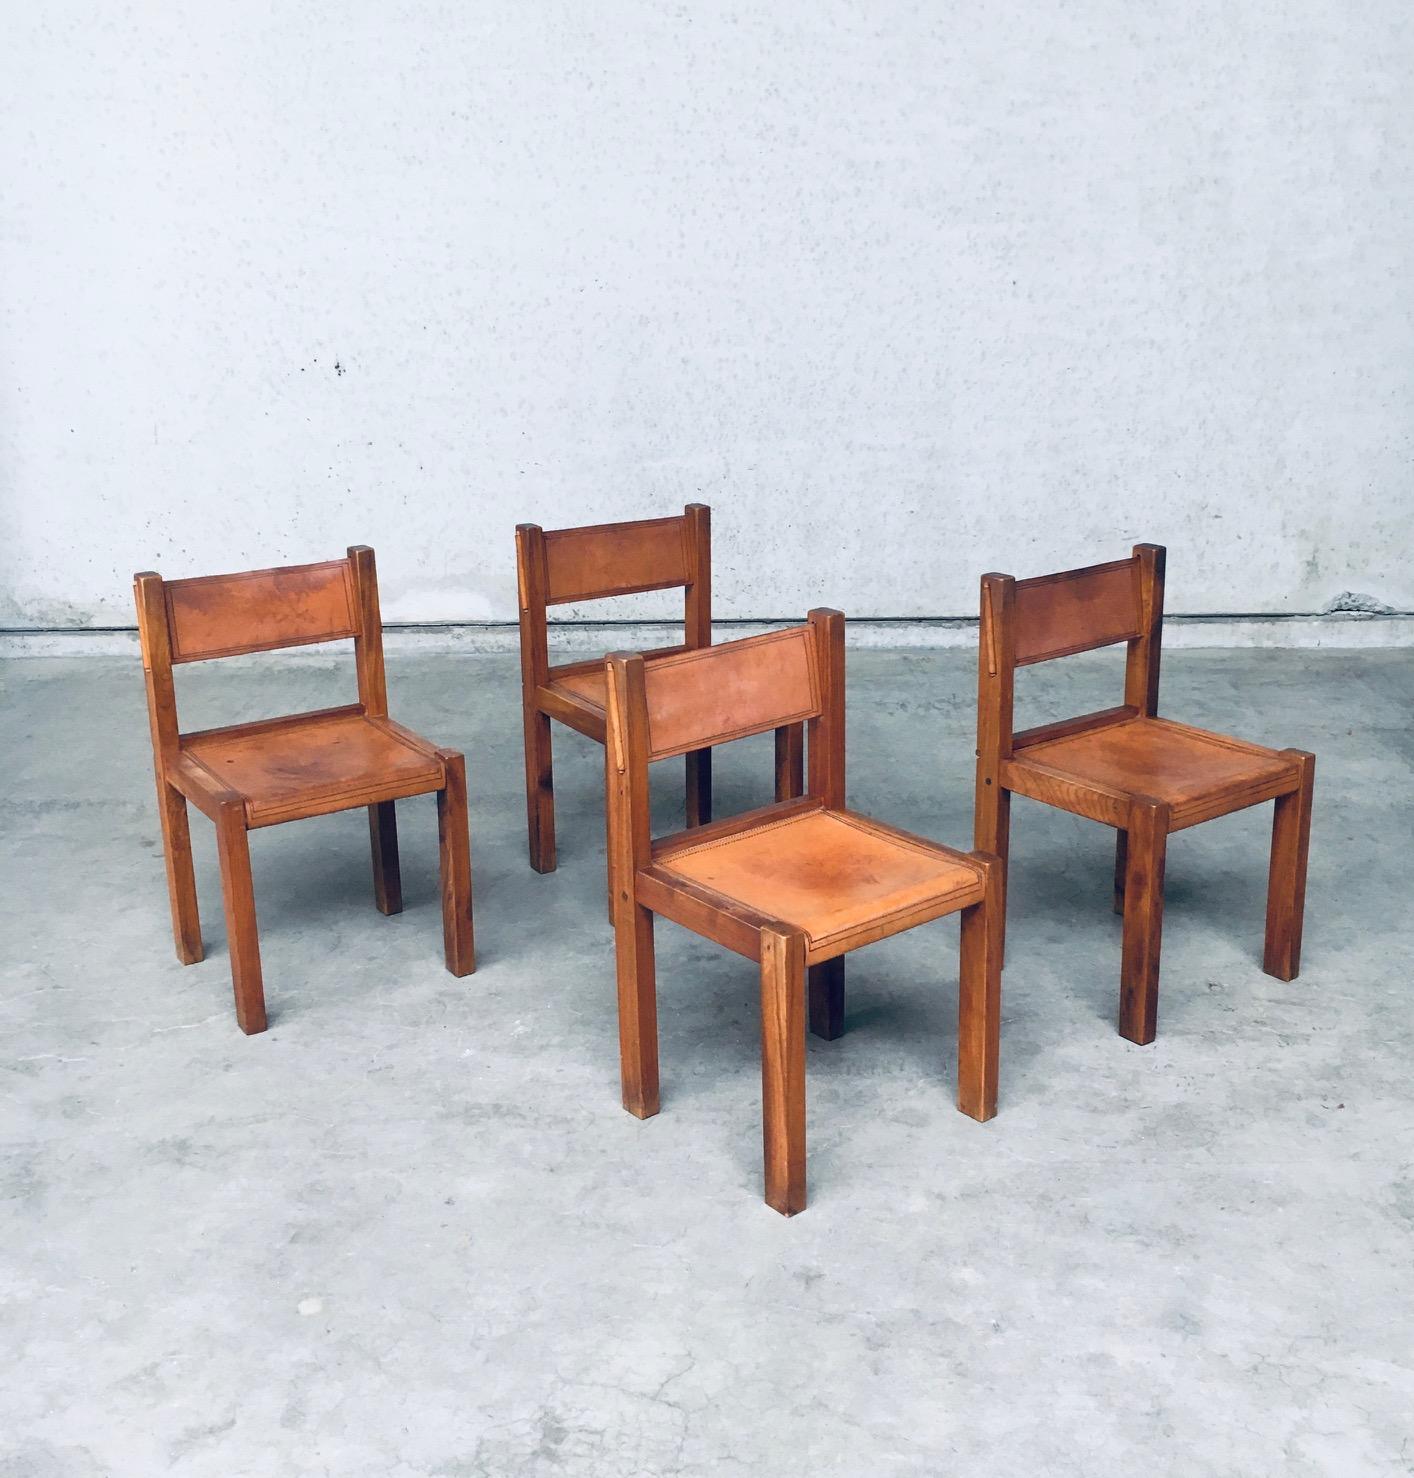 Vintage Midcentury Italian Design Elm & Cognac Leder Dining Room Chair Satz von 4. Entworfen im Stil / Art und Weise von Pierre Chapo. Hergestellt in Italien, 1960er Jahre. Beeindruckend gestaltete Stühle mit schönen Details in der Konstruktion.